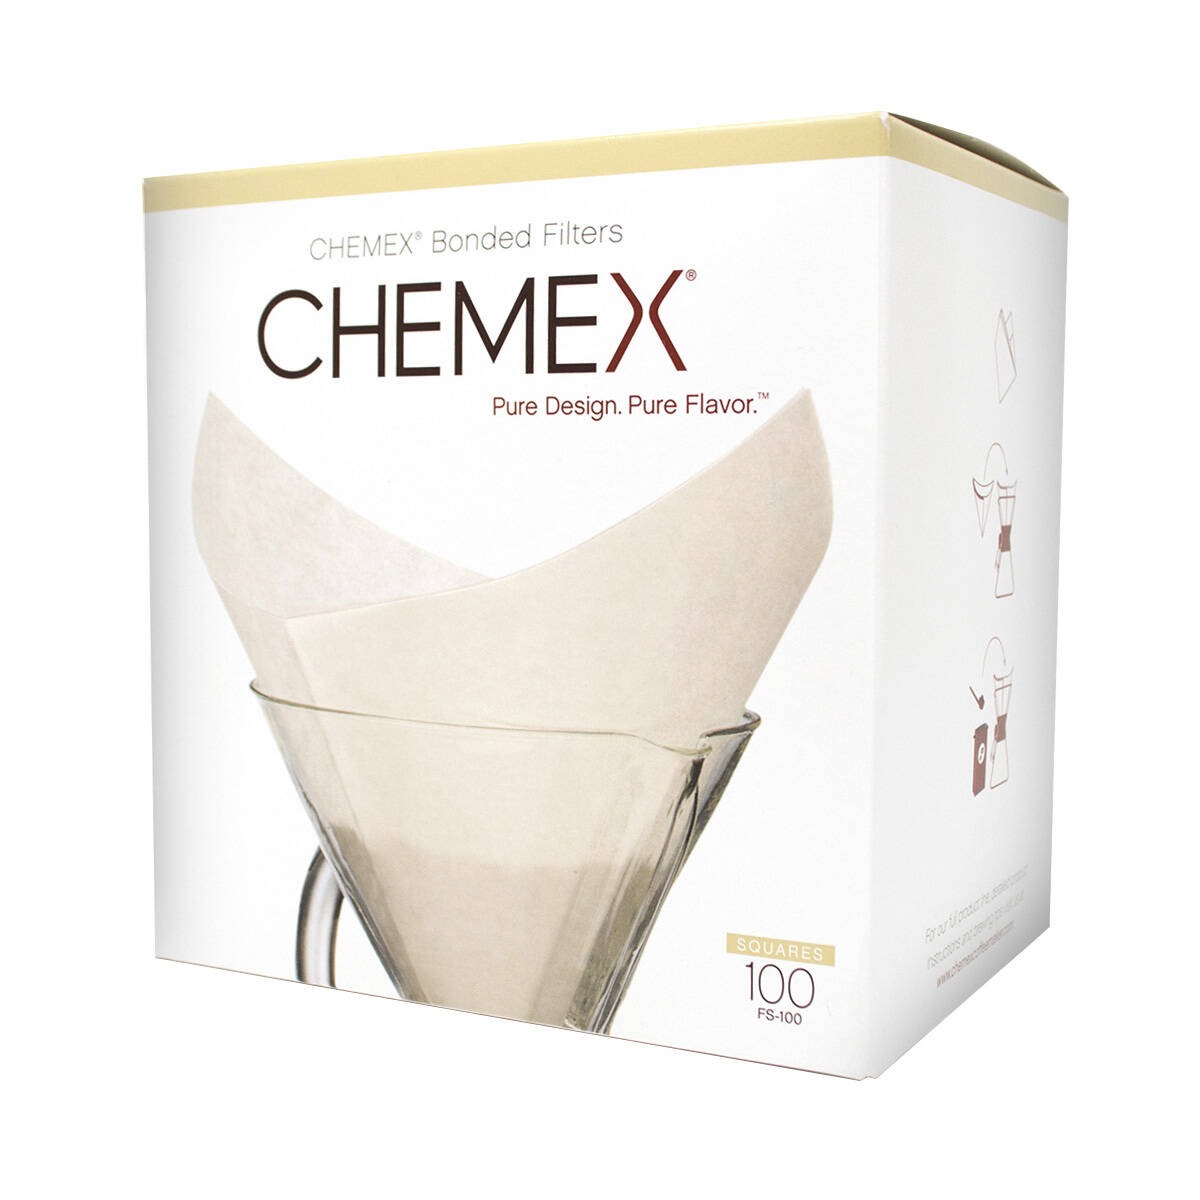 Chemex koffiefilters FS 100 Bonded gevouwen 100 stuks